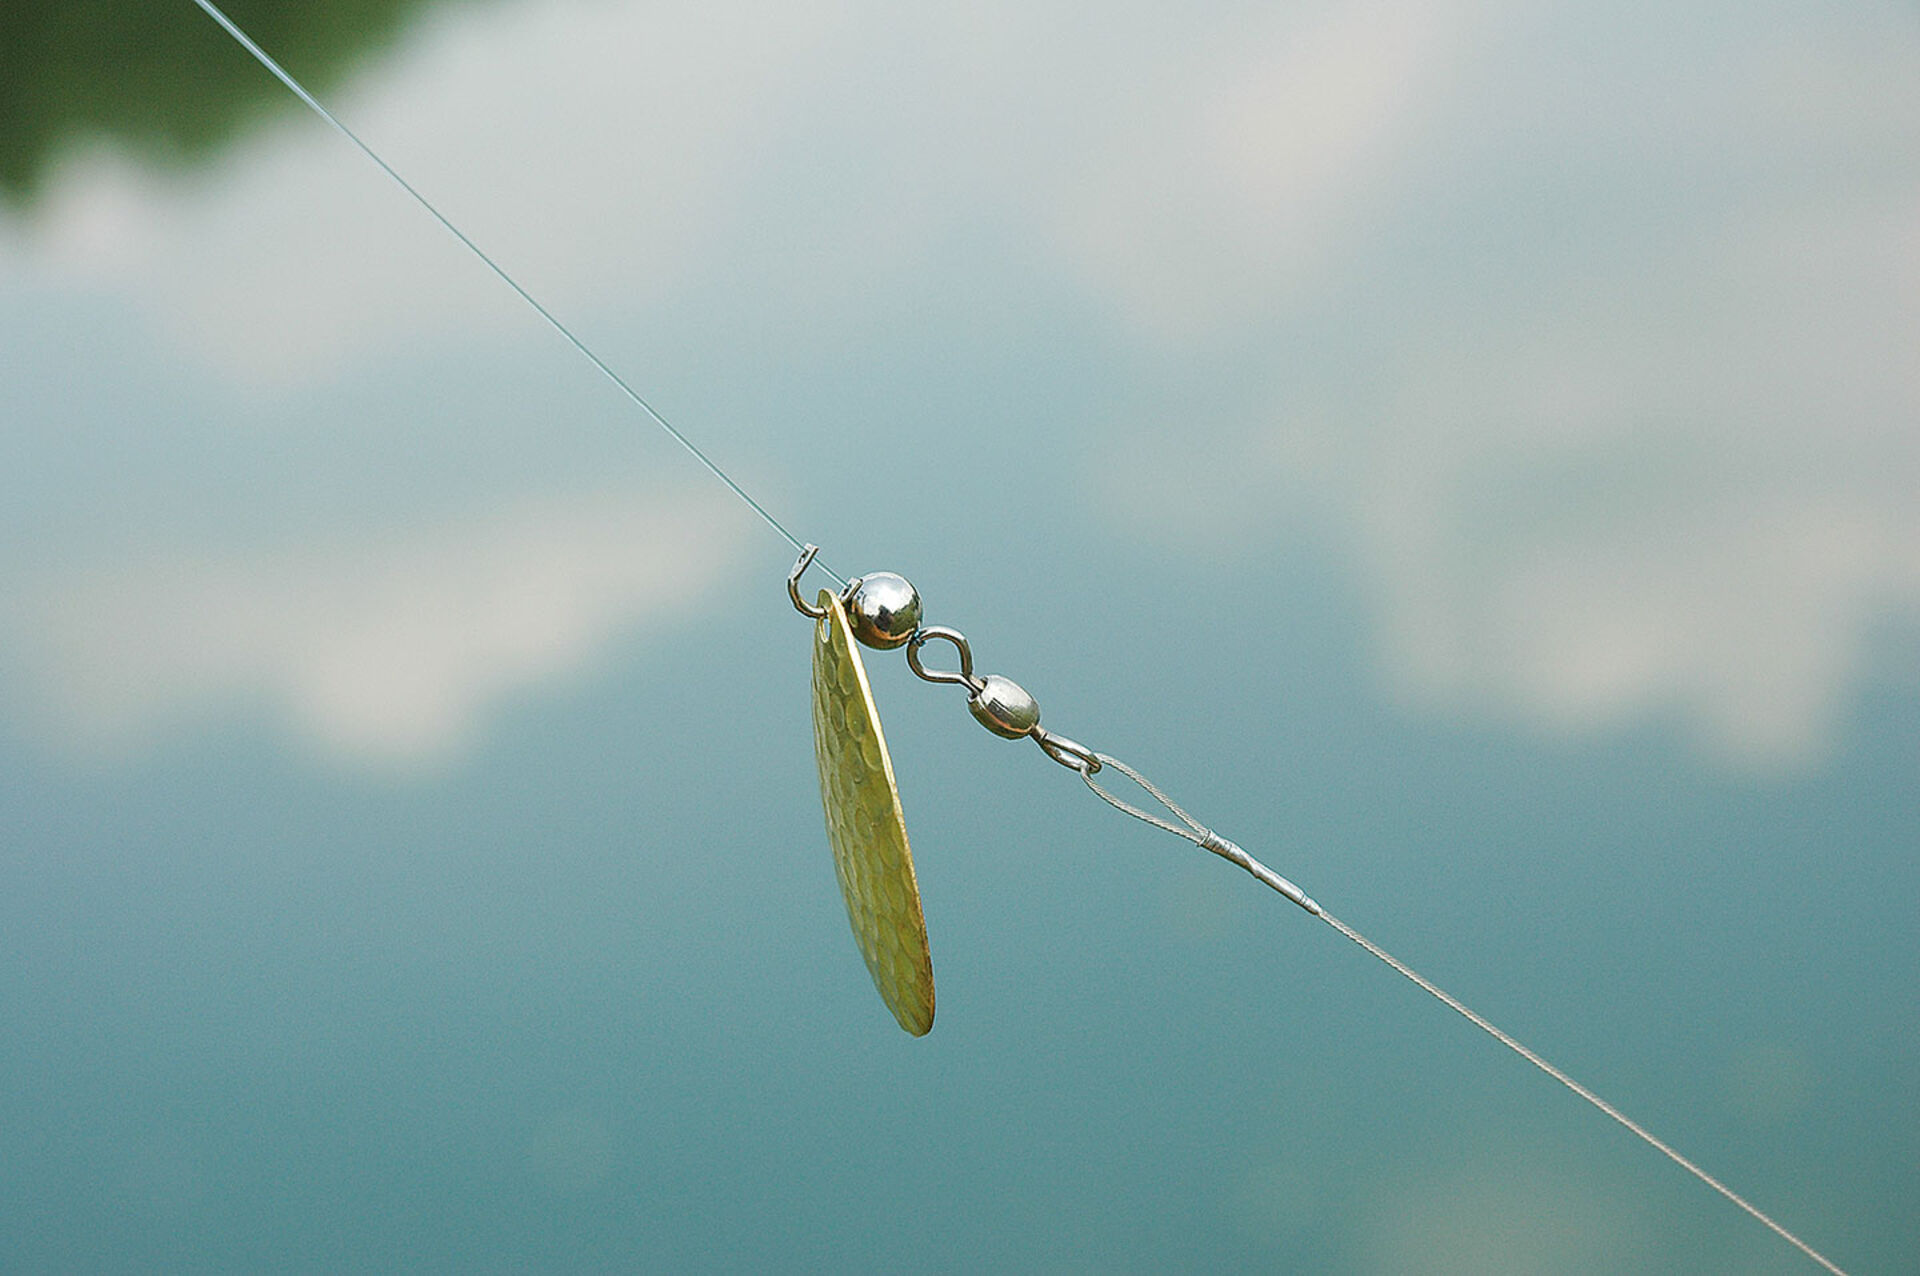  System-Tipp 2 | Glitzernde Versuchung: Ein vorgeschaltetes Spinnblatt kann den toten Köderfisch noch fängiger machen.  